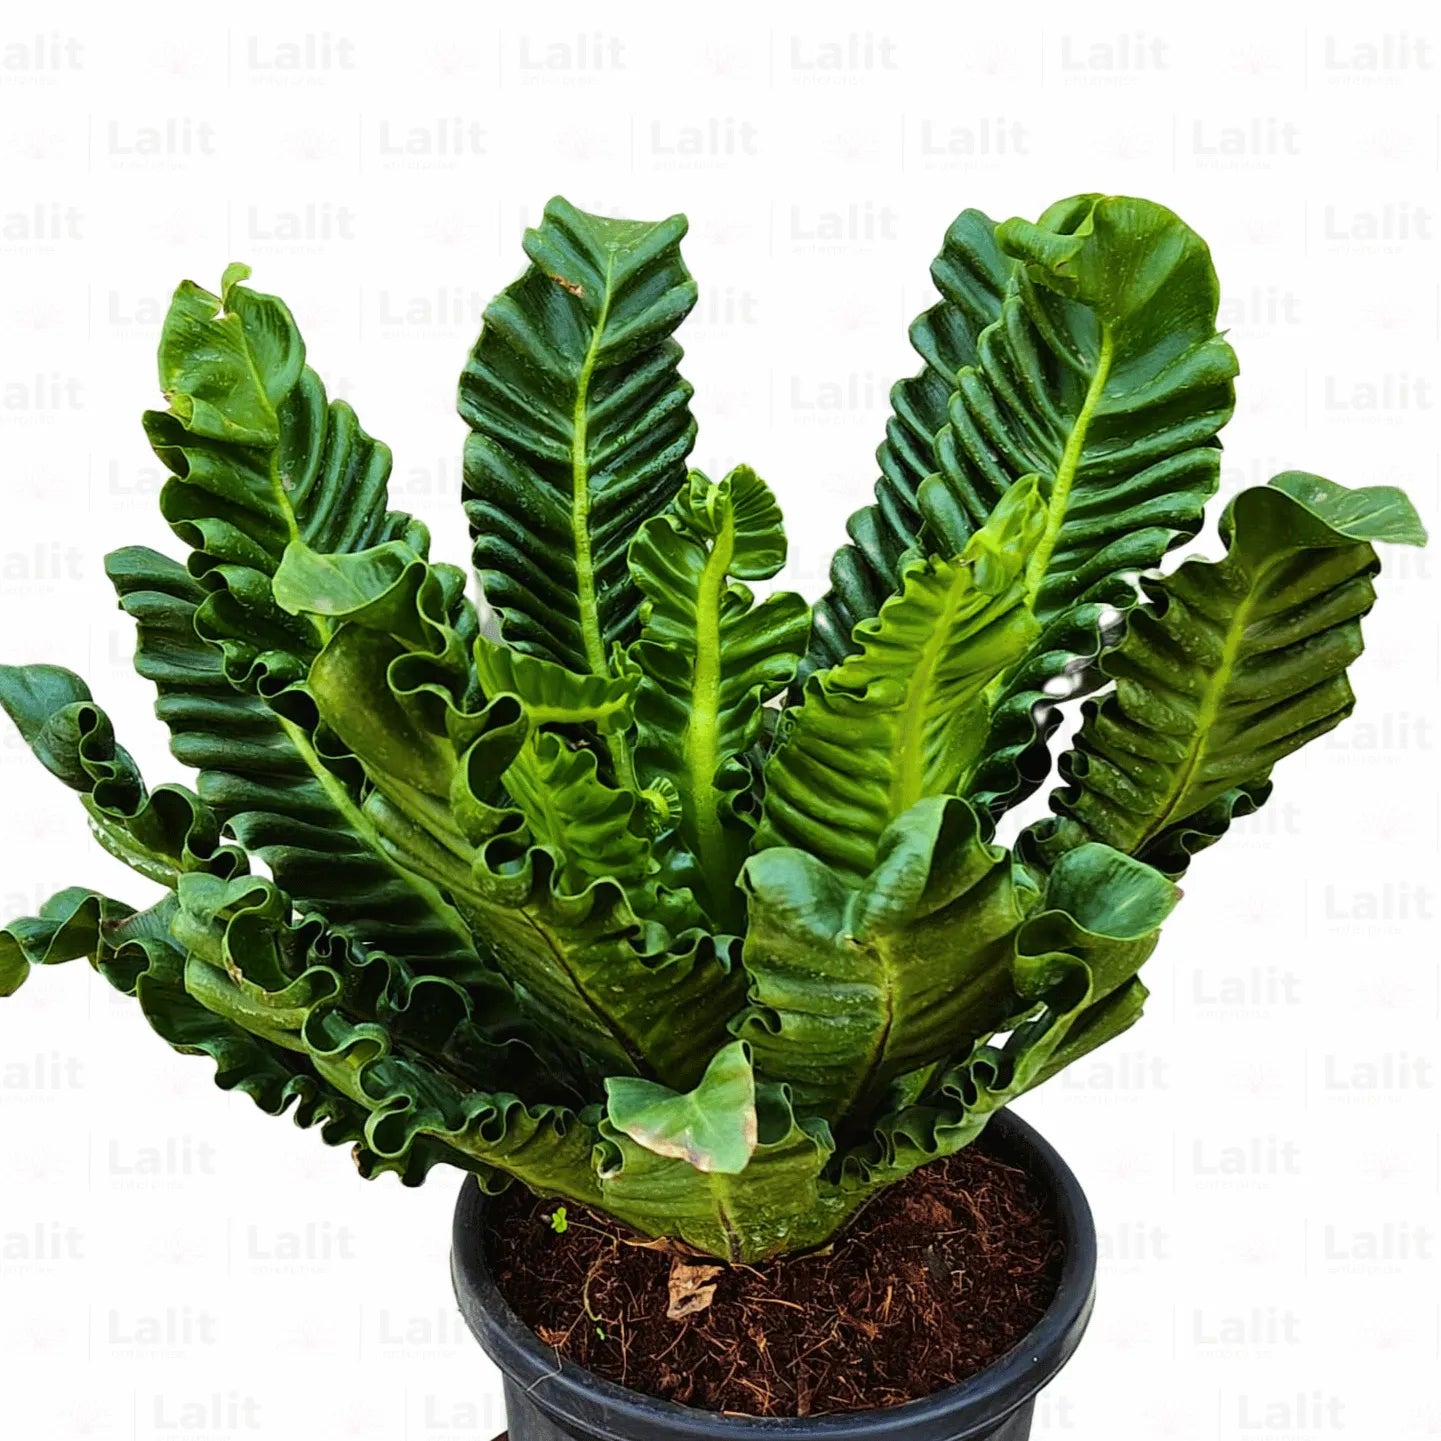 Buy Asplenium Nidus fern - Plant Online at Lalitenterprise